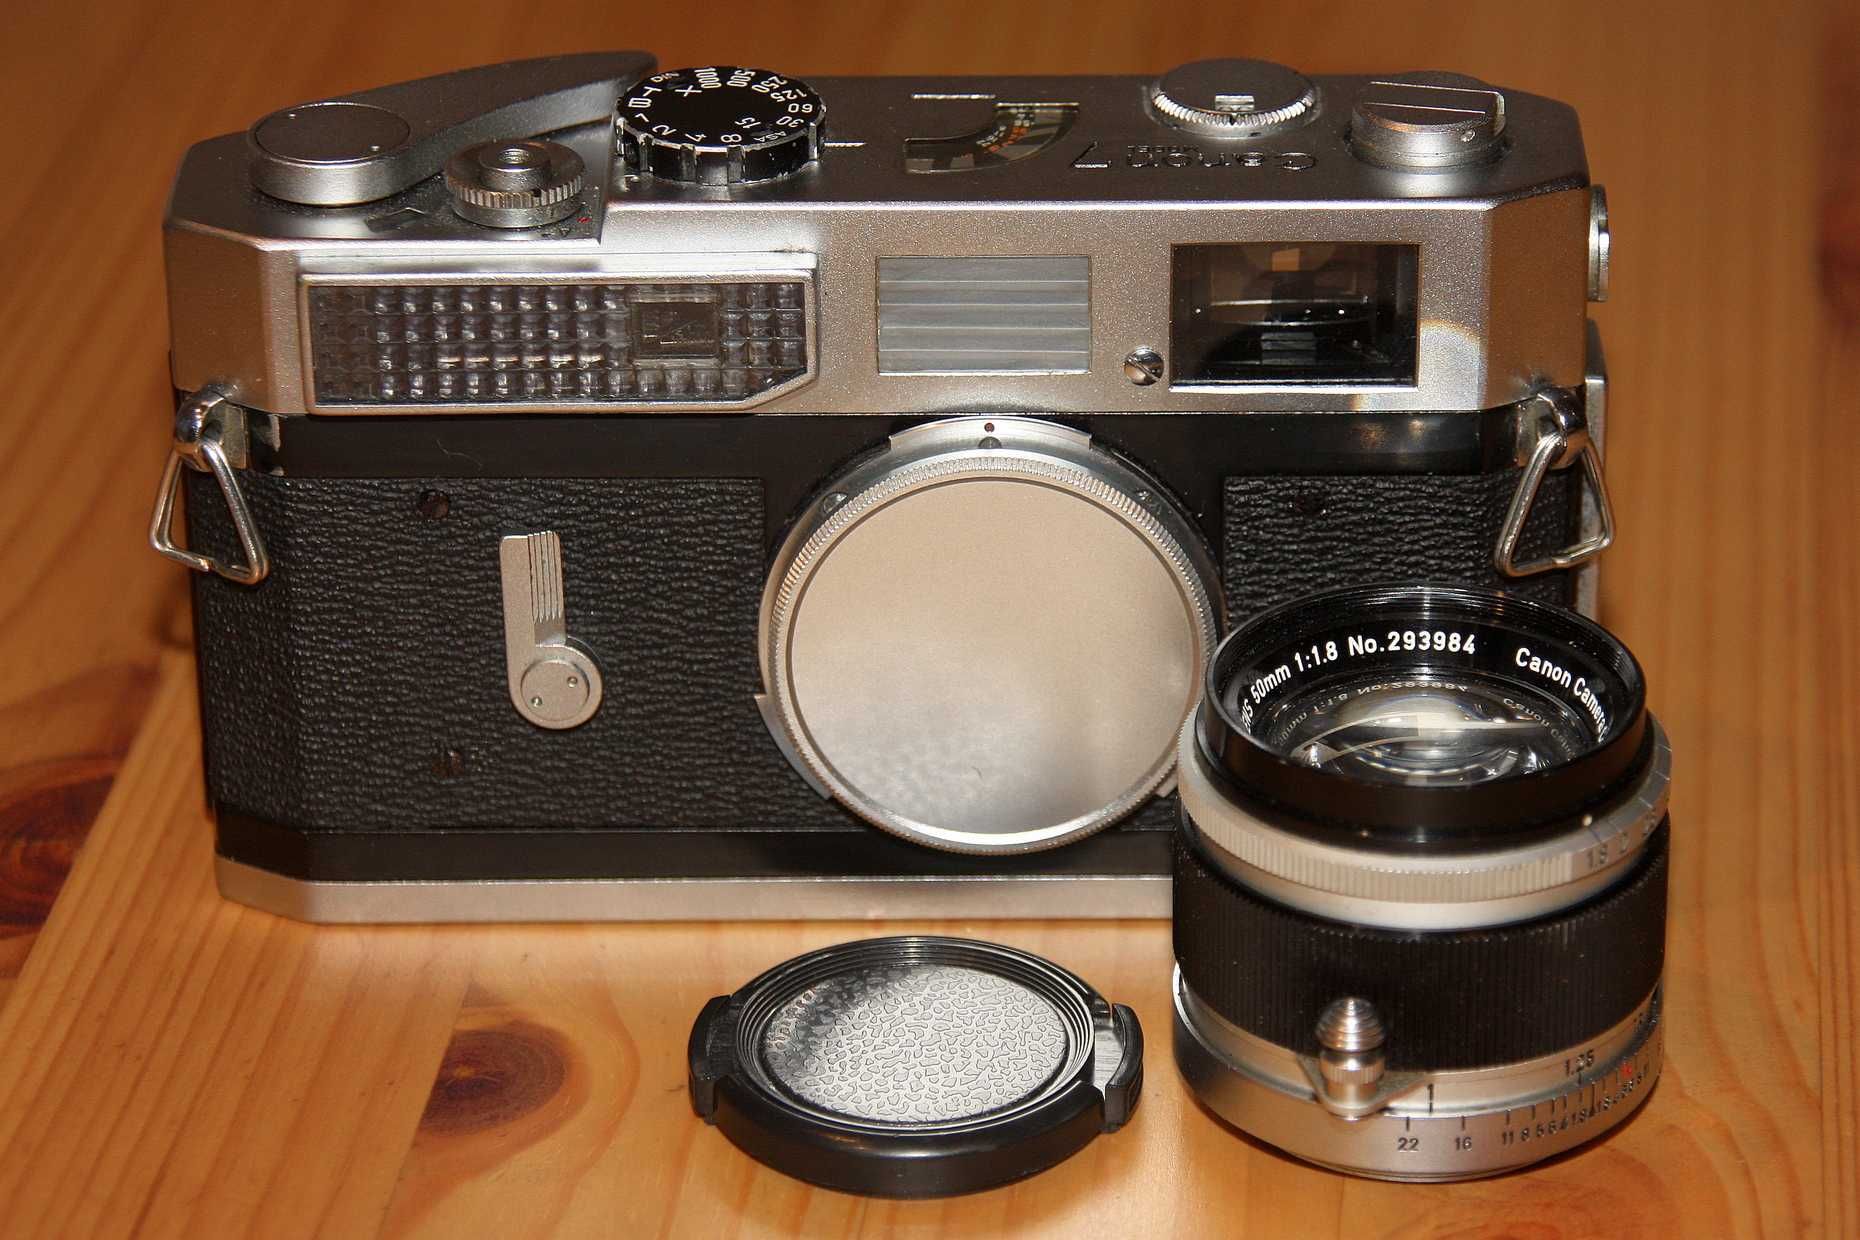 Canon model 7 далекомірна фотокамера з об'єктивом та чохлом